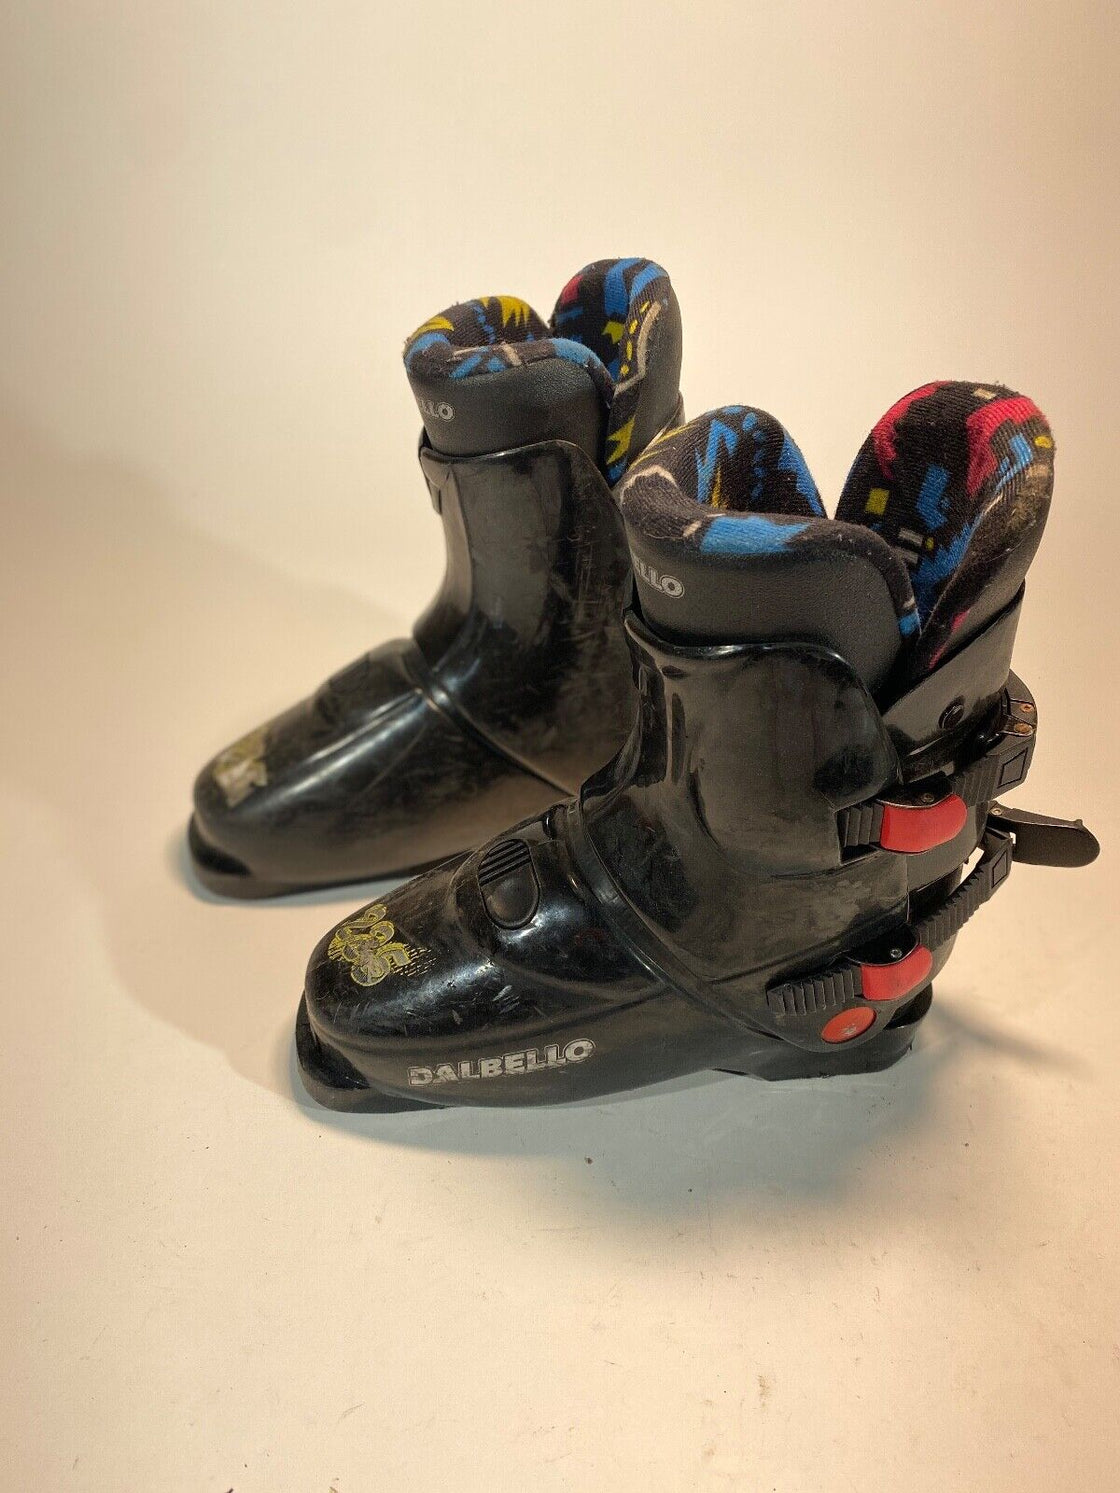 DALBELLO Alpine Ski Boots Kids / Youth Size Mondo 230 mm, Outer Sole 281 mm